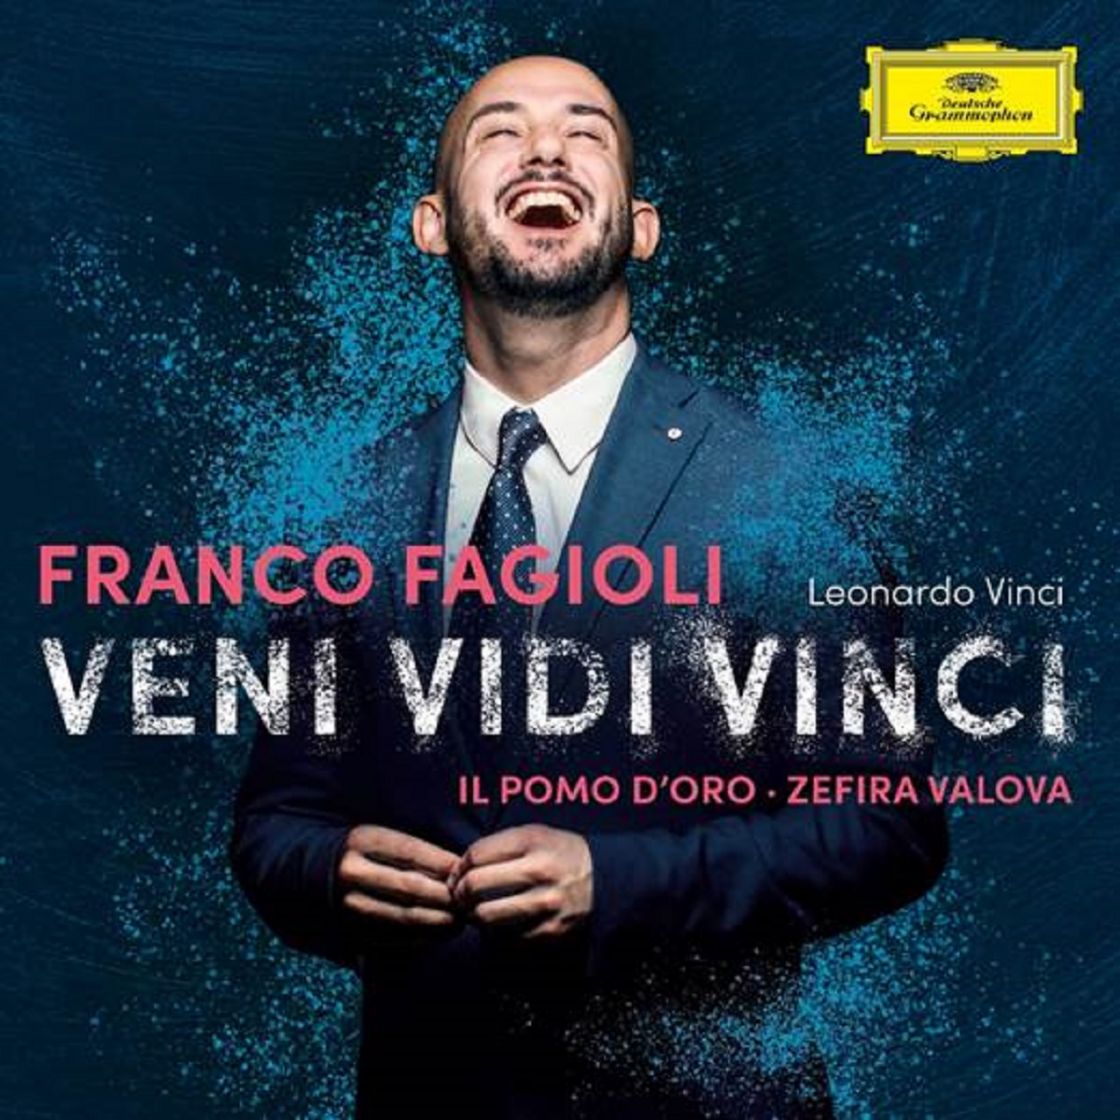 Franco Fagioli - Leonardo Vinci: Veni, Vidi, Vinci